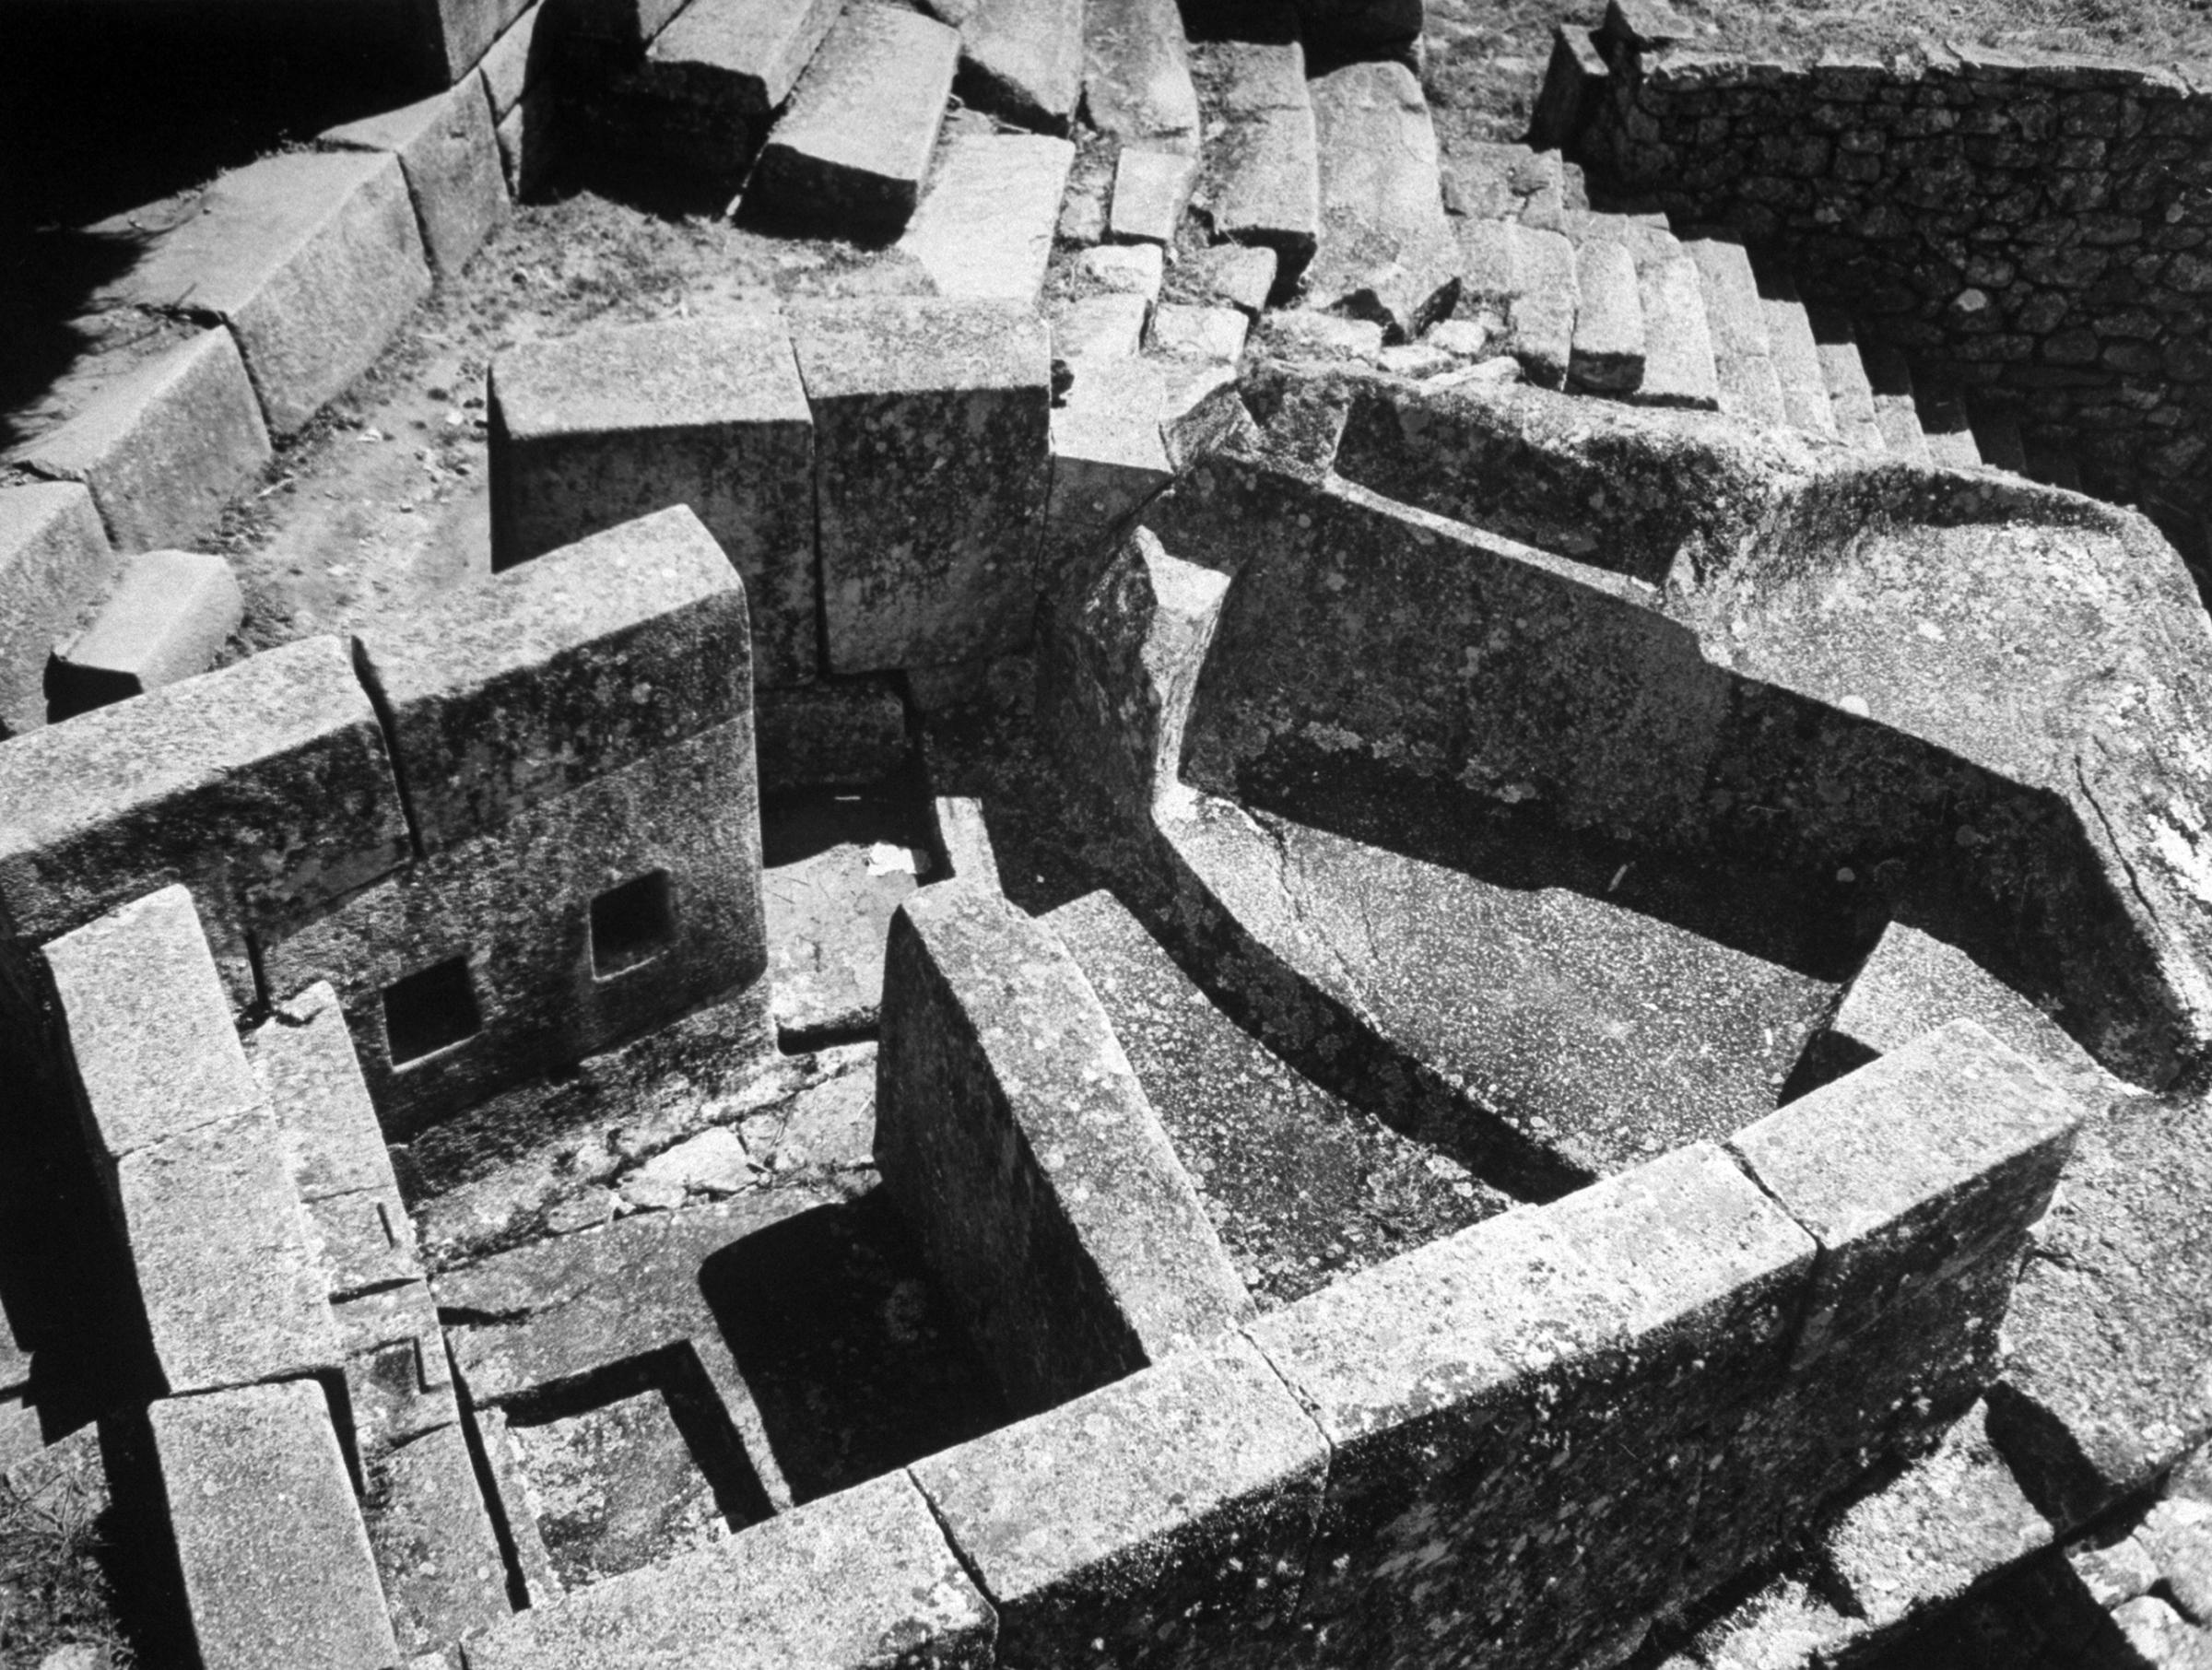 The Inca Ruins of Machu Picchu in Peru, 1945